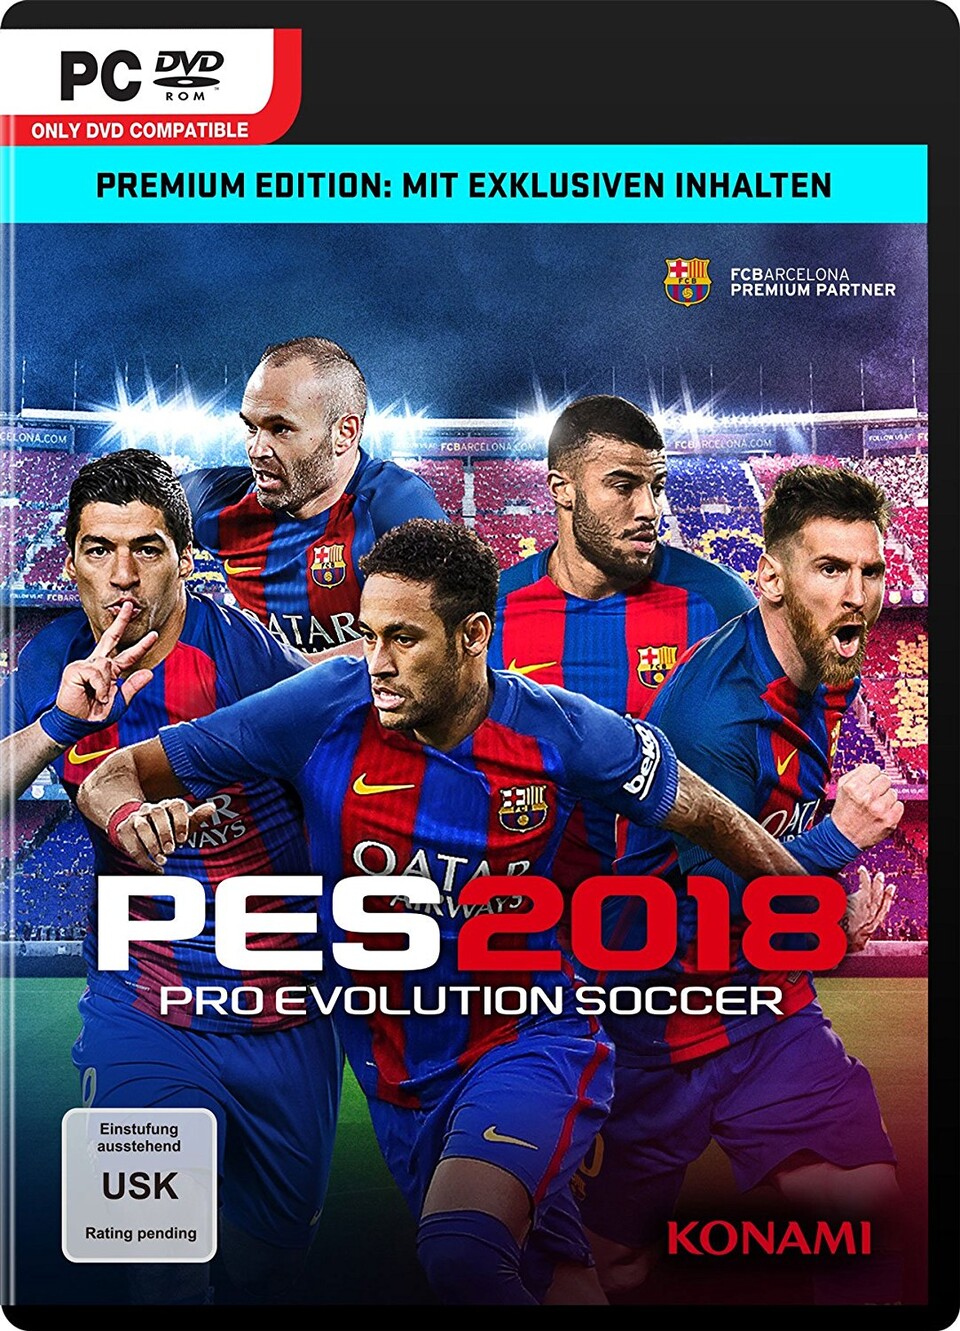 Auf dem Cover der FC Barcelona Edition von Pro Evolution Soccer 2018 ist Neymar noch im falschen Trikot zu sehen.